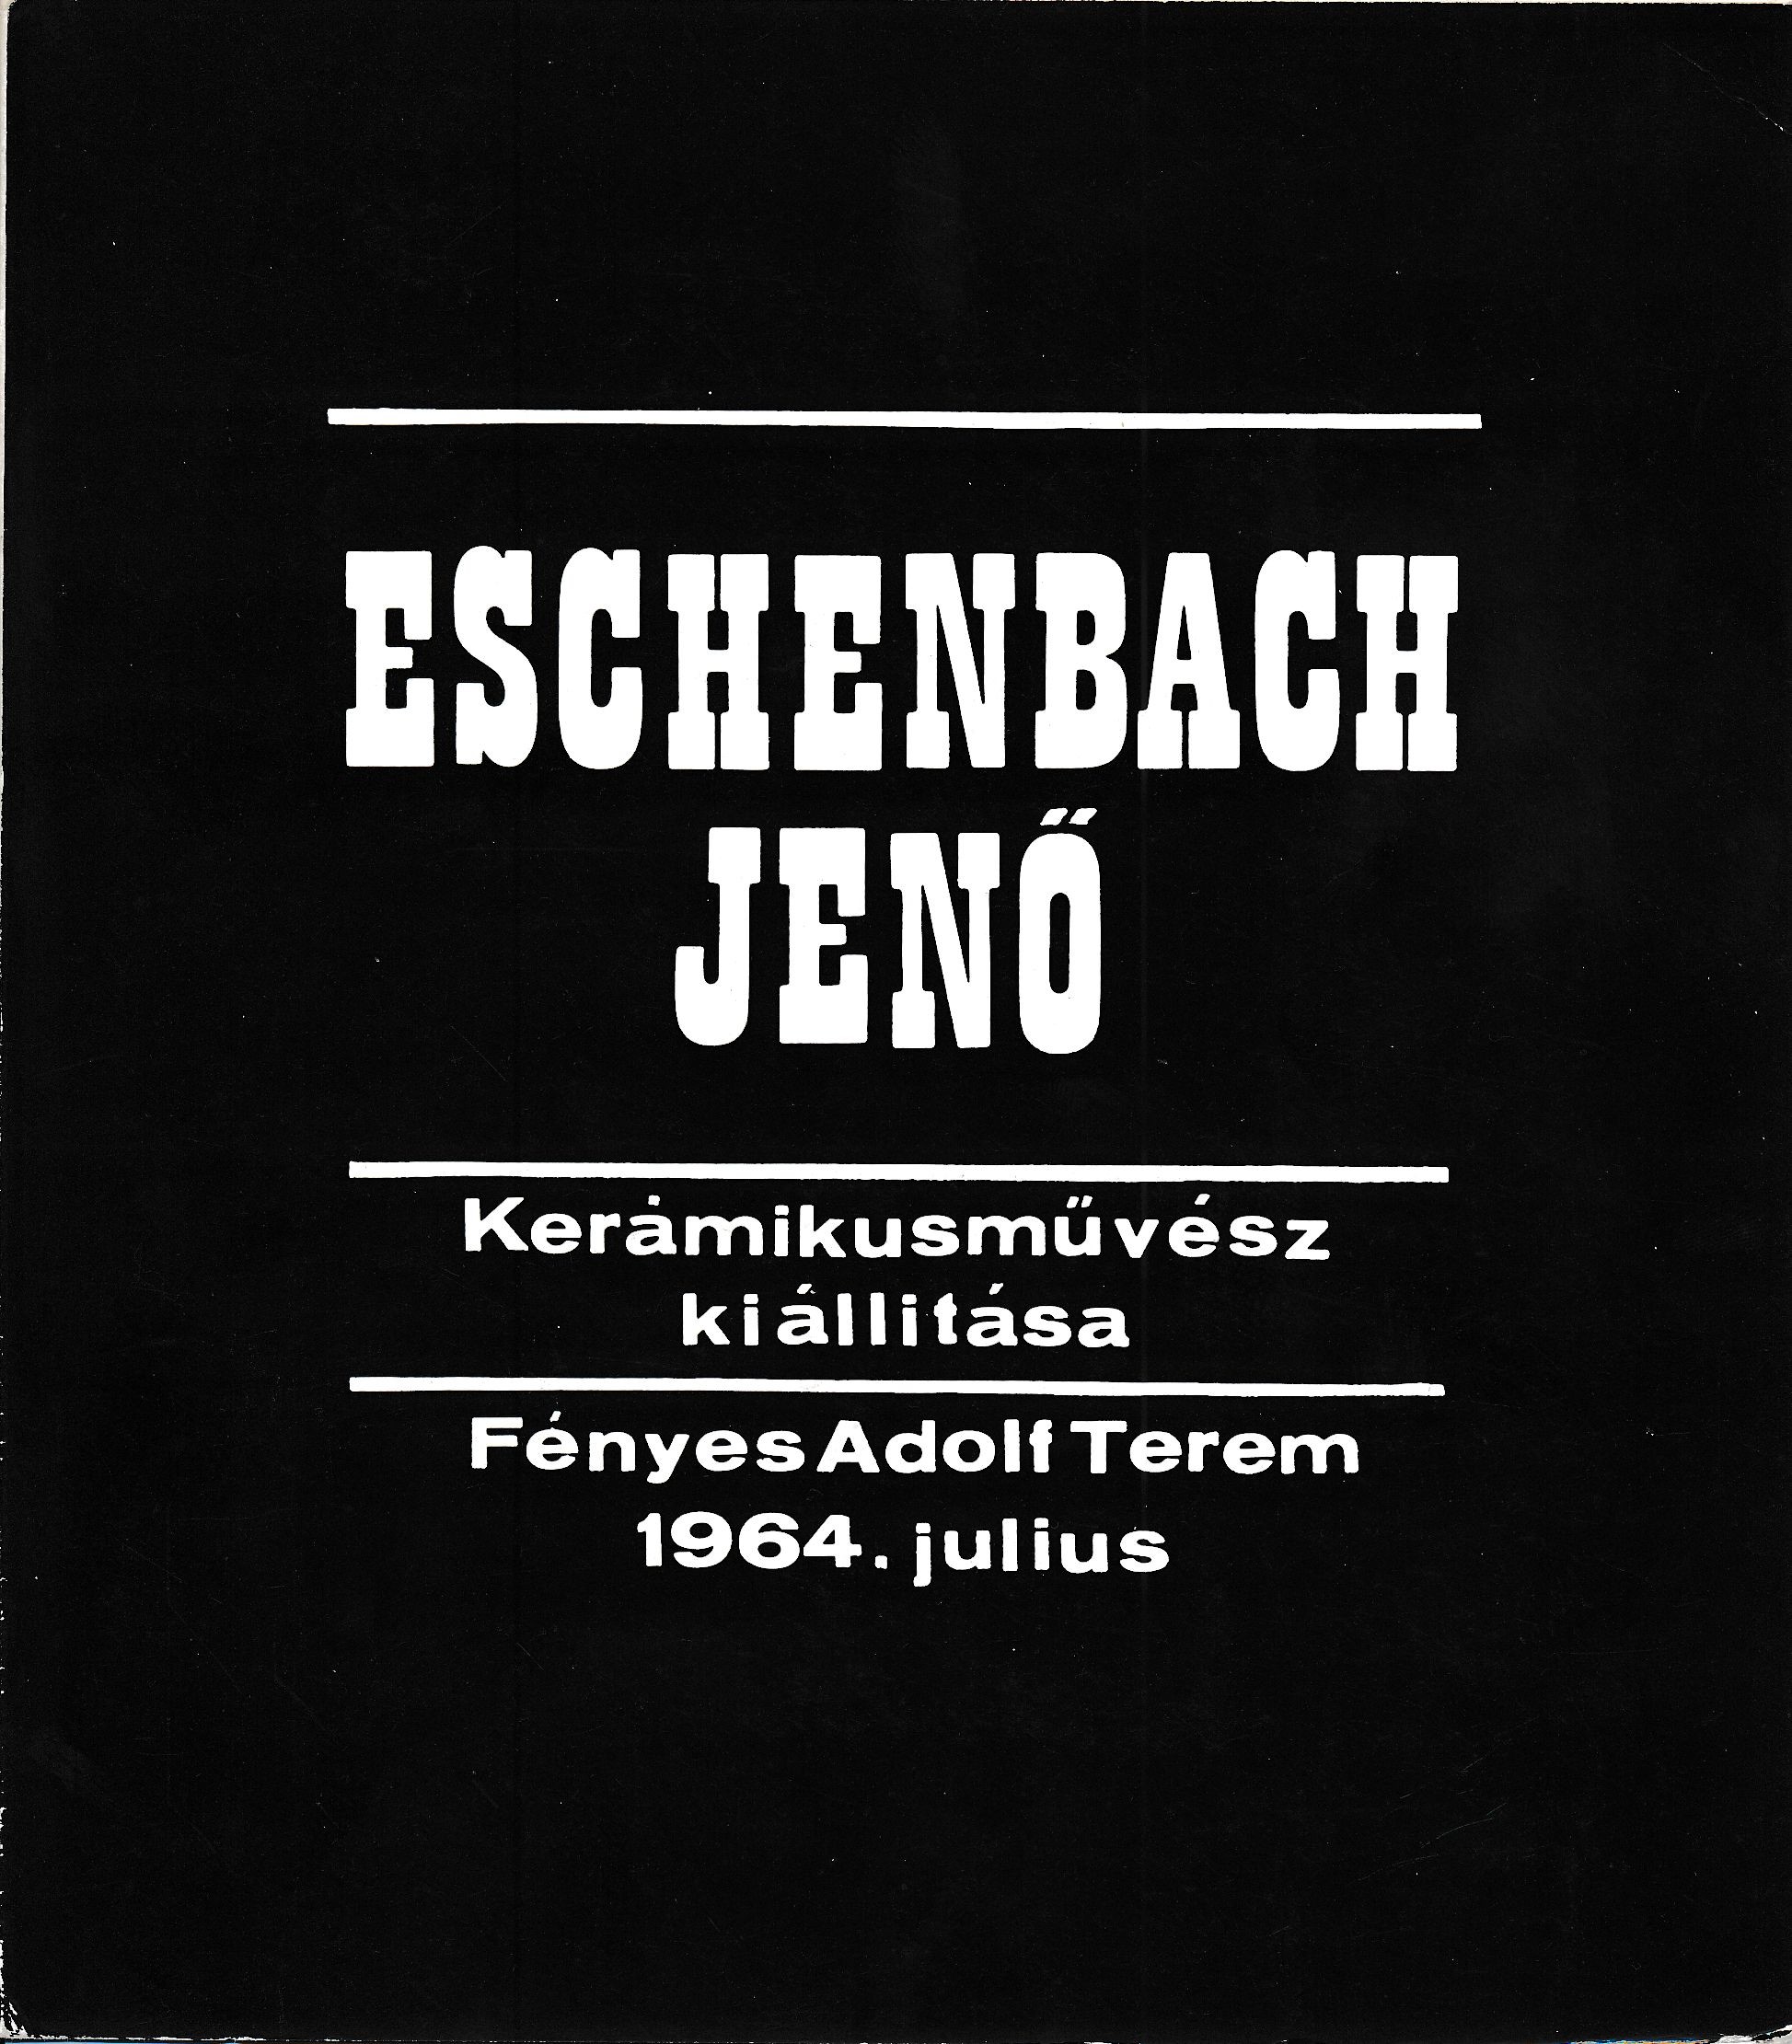 Eschenbach Jenő kerámikusművész kiállítása Budapest Fényes Adolf Terem 1964 július (Design DigiTár – Iparművészeti archívum CC BY-NC-SA)